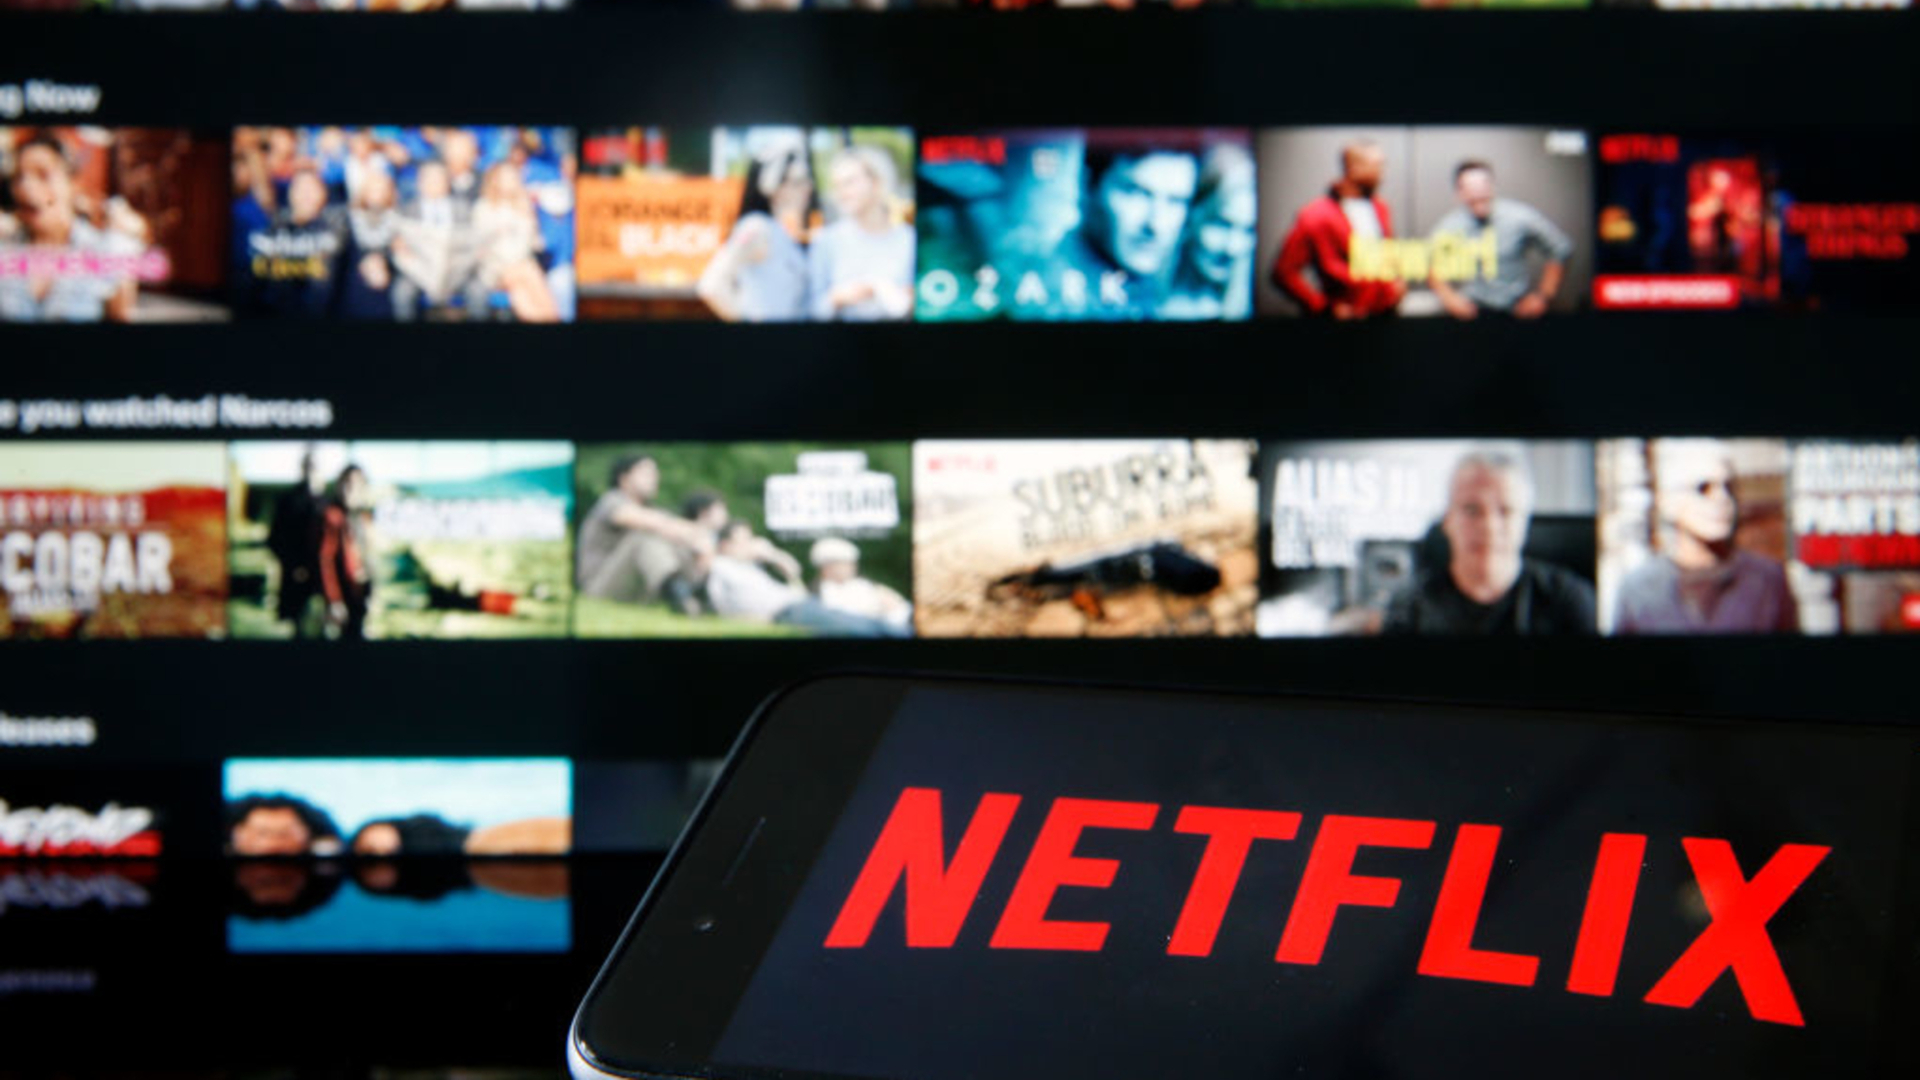 Netflix prova a bloccare la condivisione degli abbonamenti?